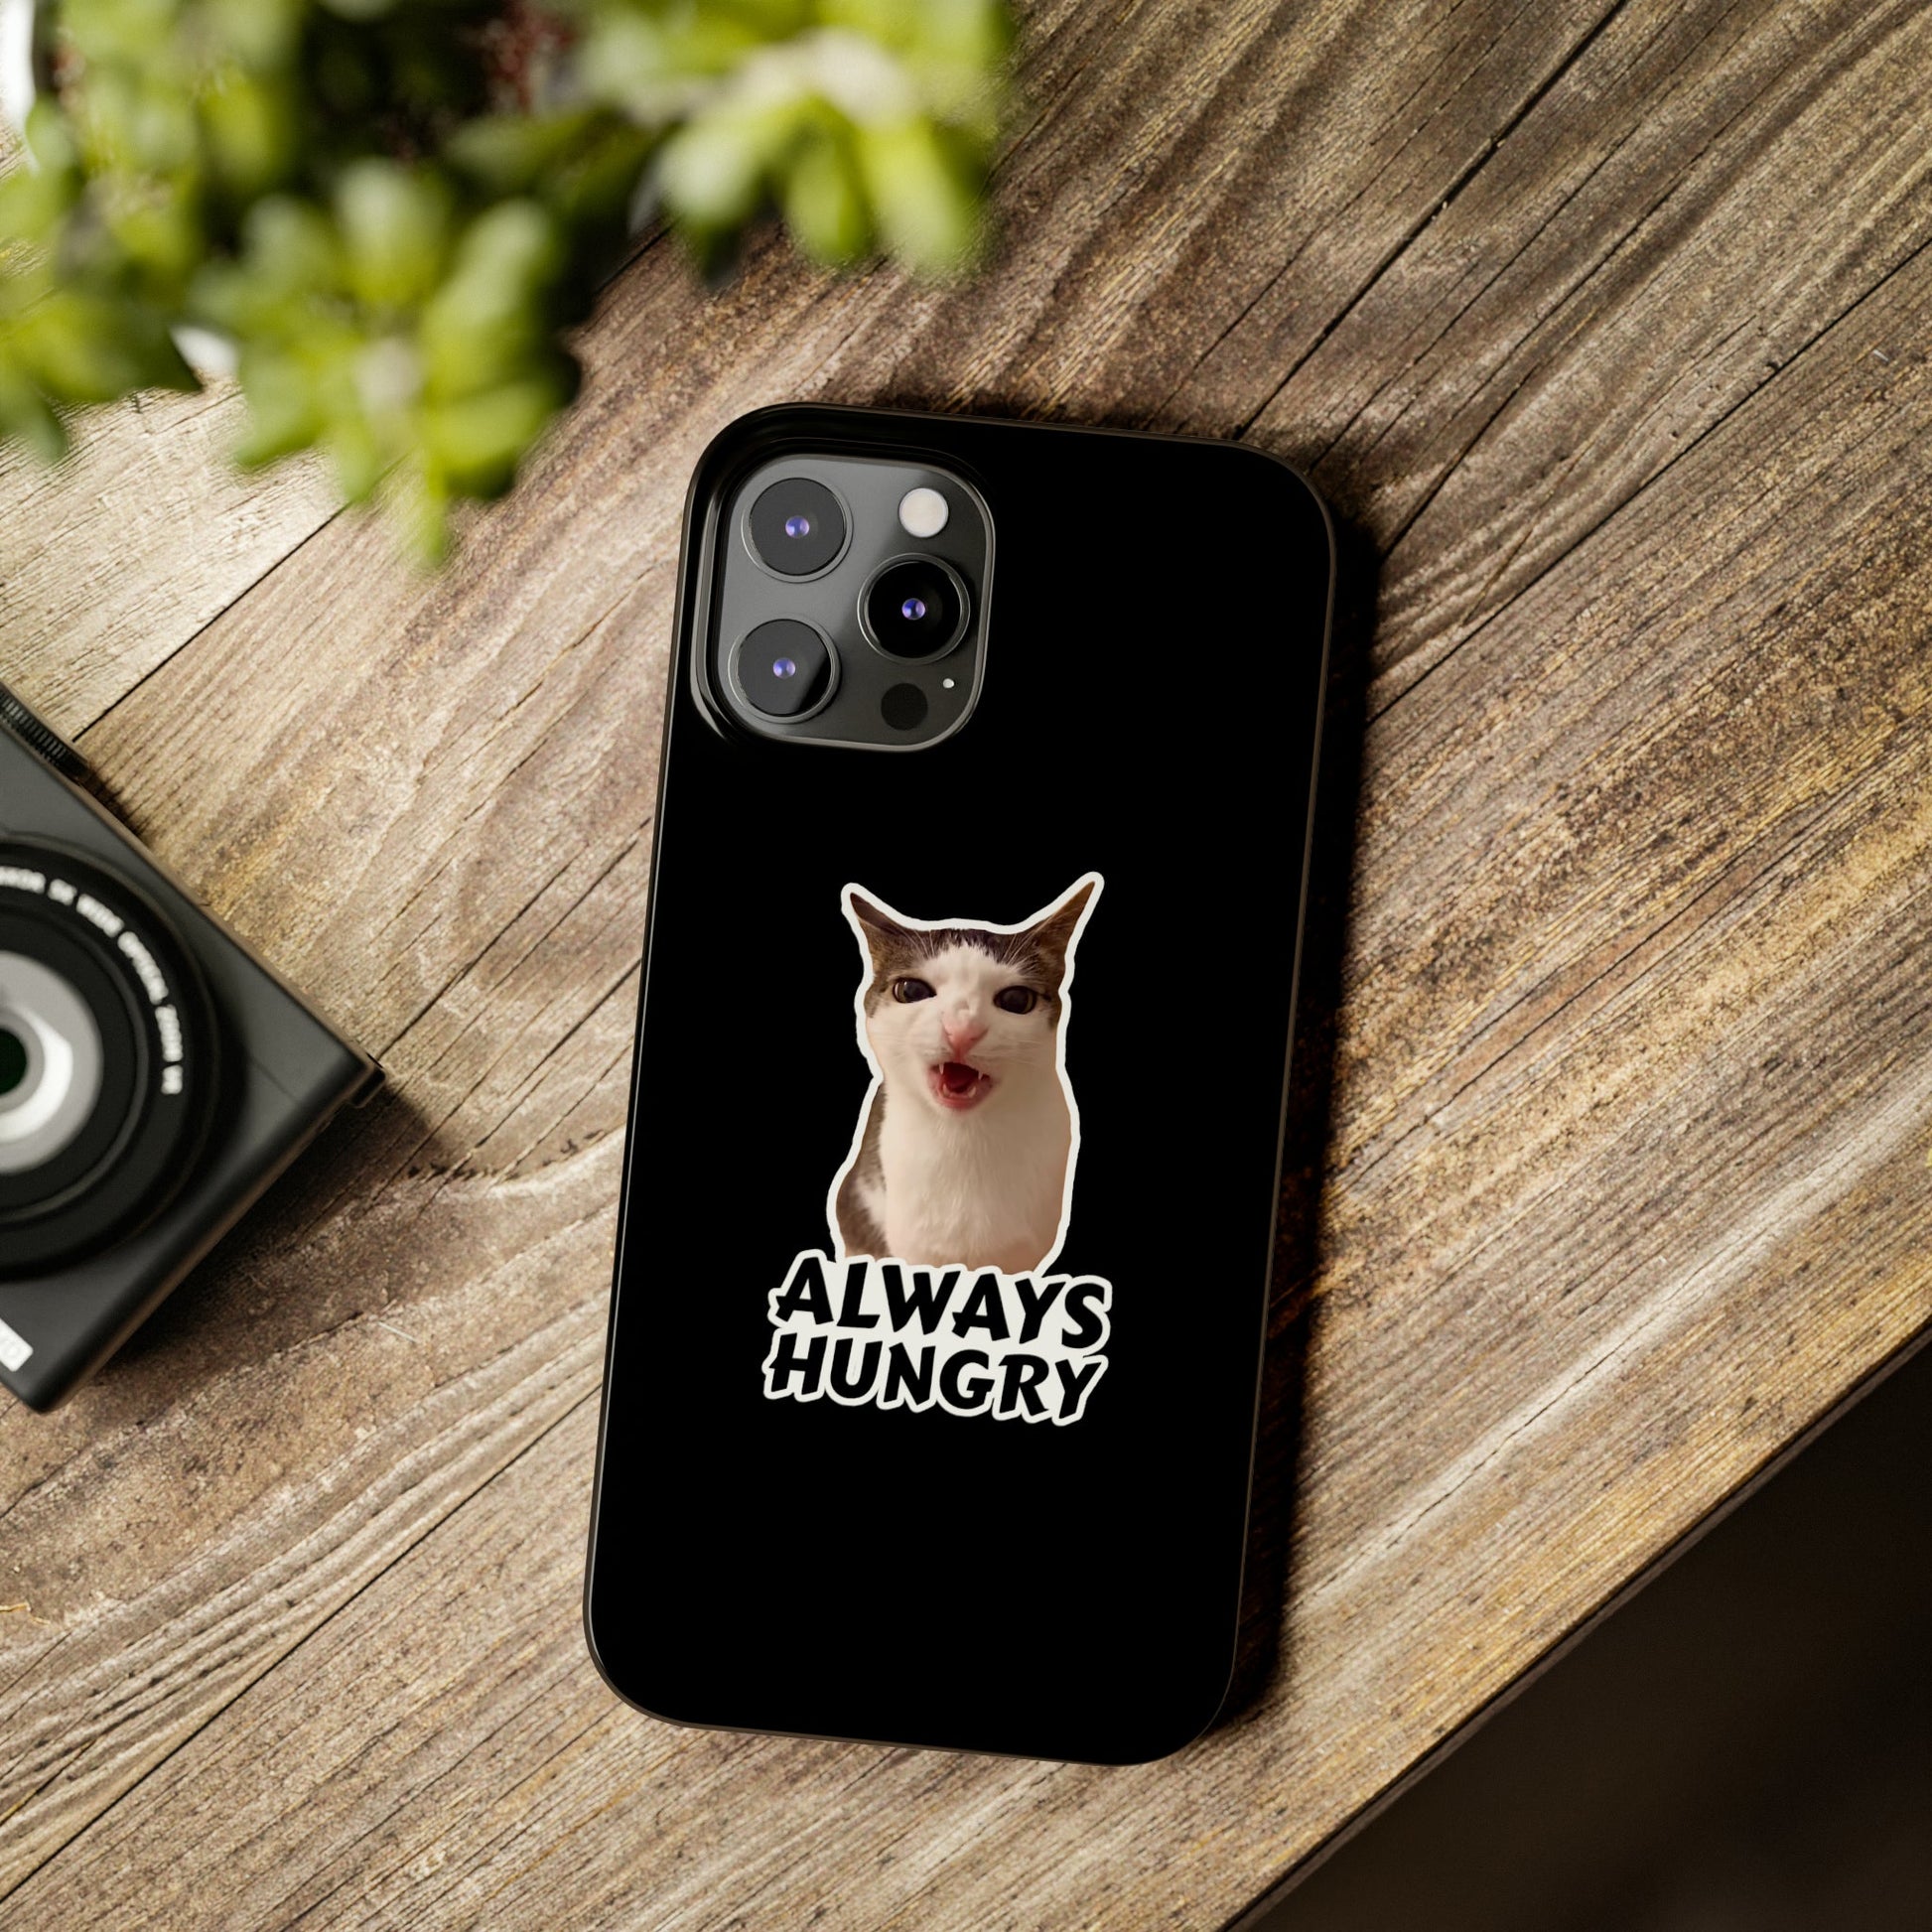 Eating Cat Meme Slim Phone Cases - getallfun